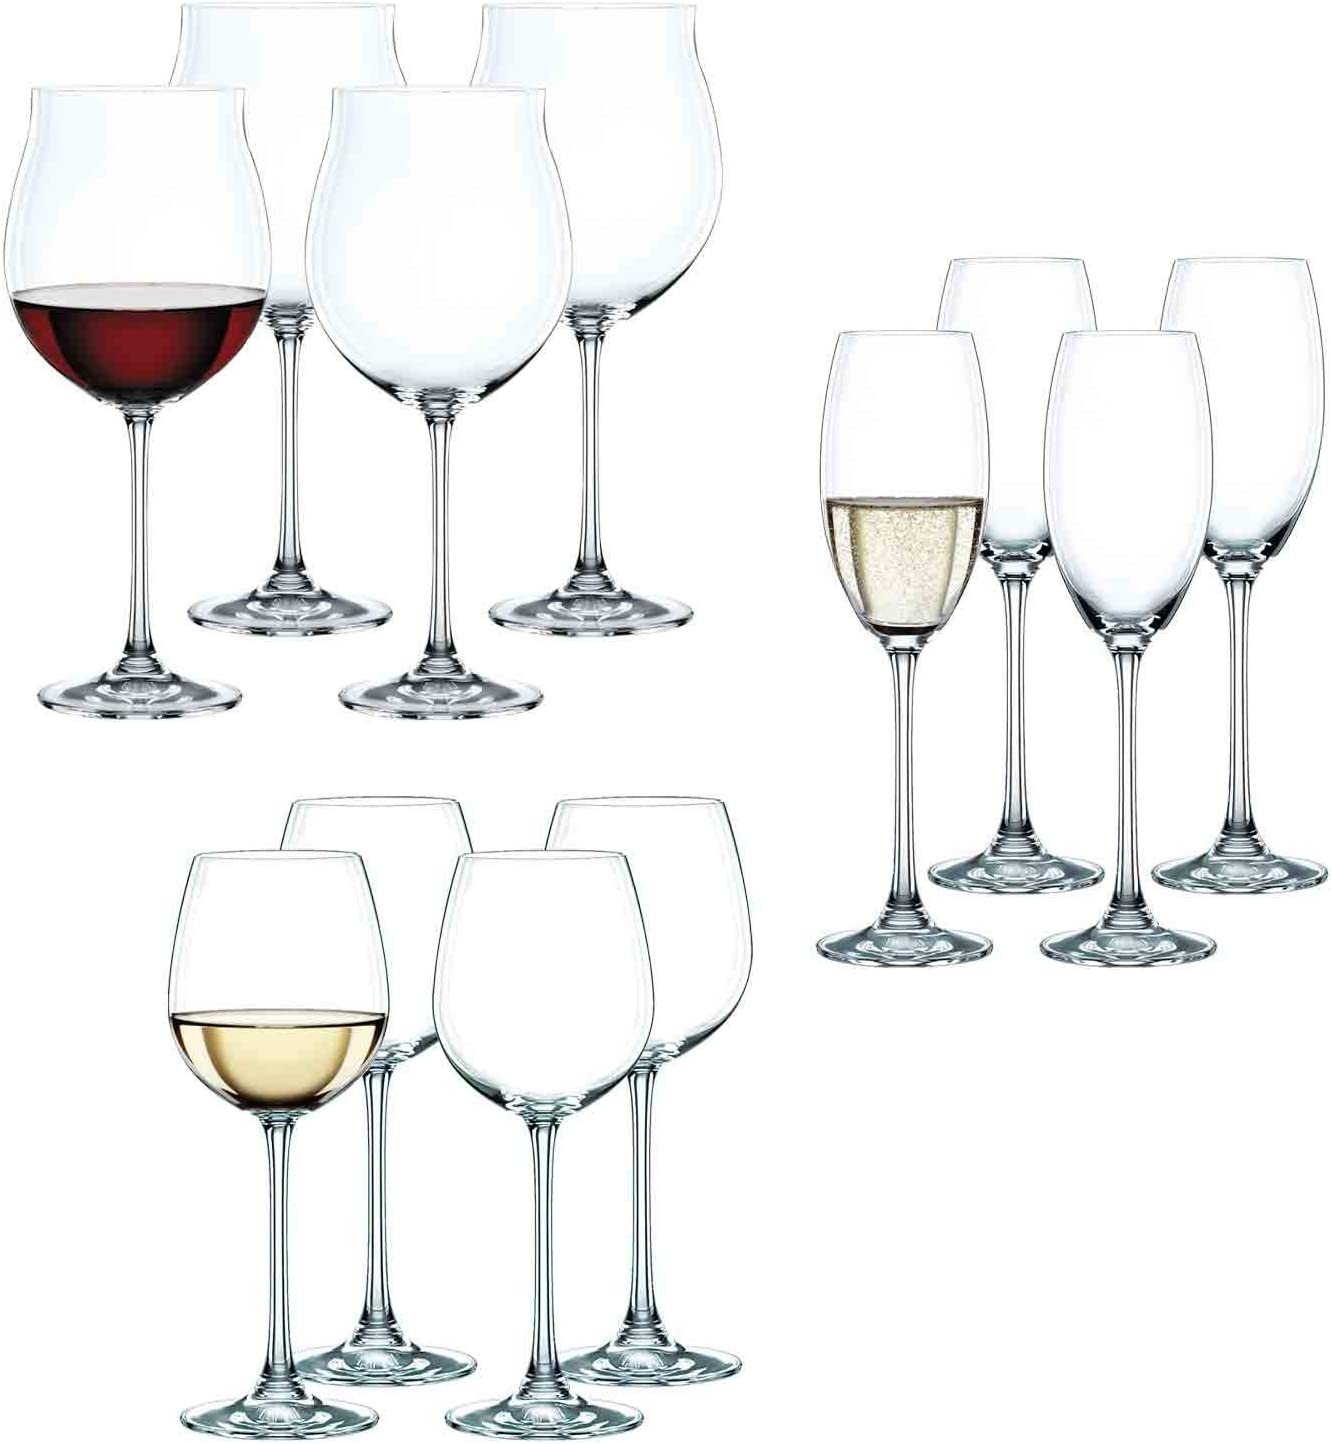 Spiegelau & Nachtmann, Vivendi Set of 12 Glasses 4 X Red Wine Glasses 4 X White Wine Glasses 4 X Champagne Glasses